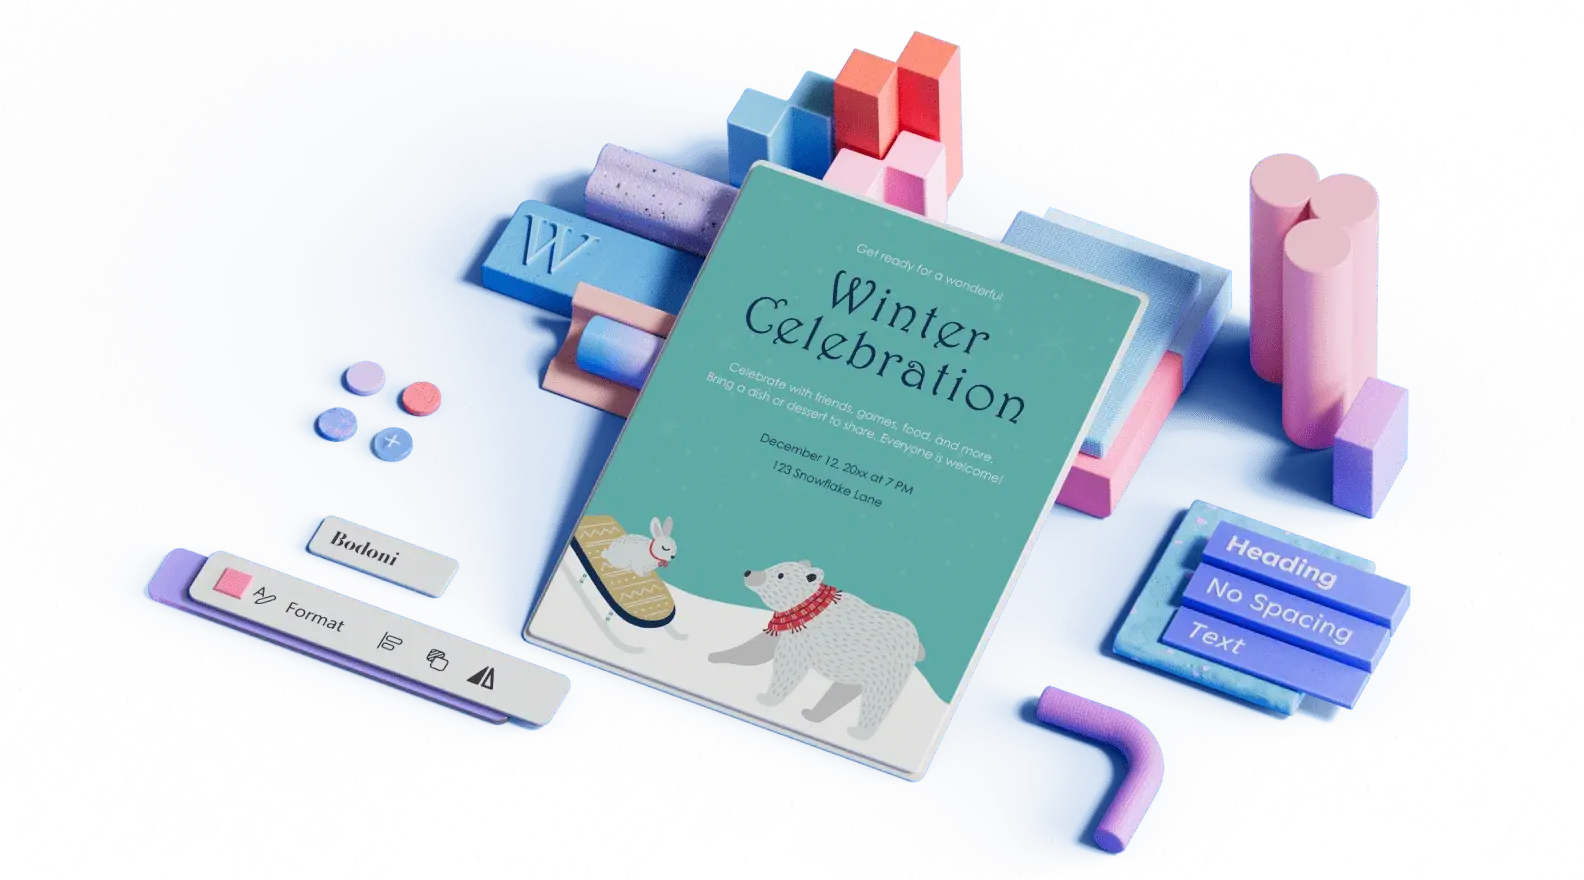 Шаблон объявления о зимнем празднике в окружении трехмерных иллюстрированных элементов оформления